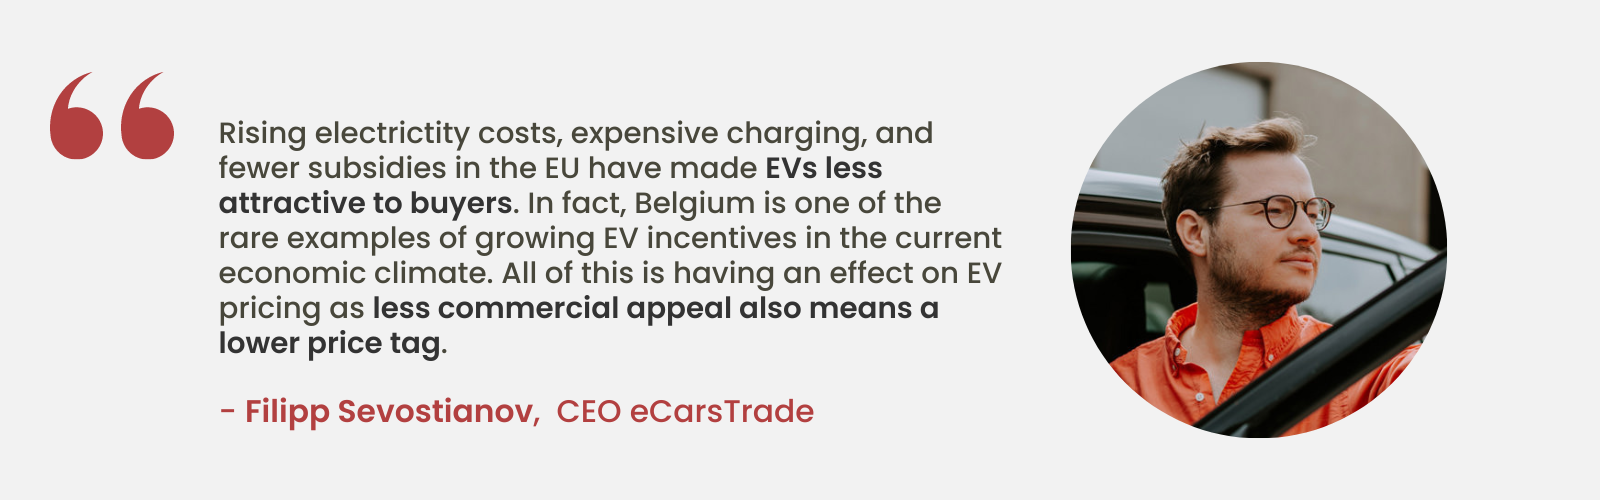 La opinión experta de Filipp Sevostianov, director ejecutivo de eCarsTrade, sobre el cada vez menor atractivo de los vehículos eléctricos debido al aumento de los costos y la reducción de los subsidios en la UE, destacando la posición única de Bélgica con crecientes incentivos para los vehículos eléctricos.